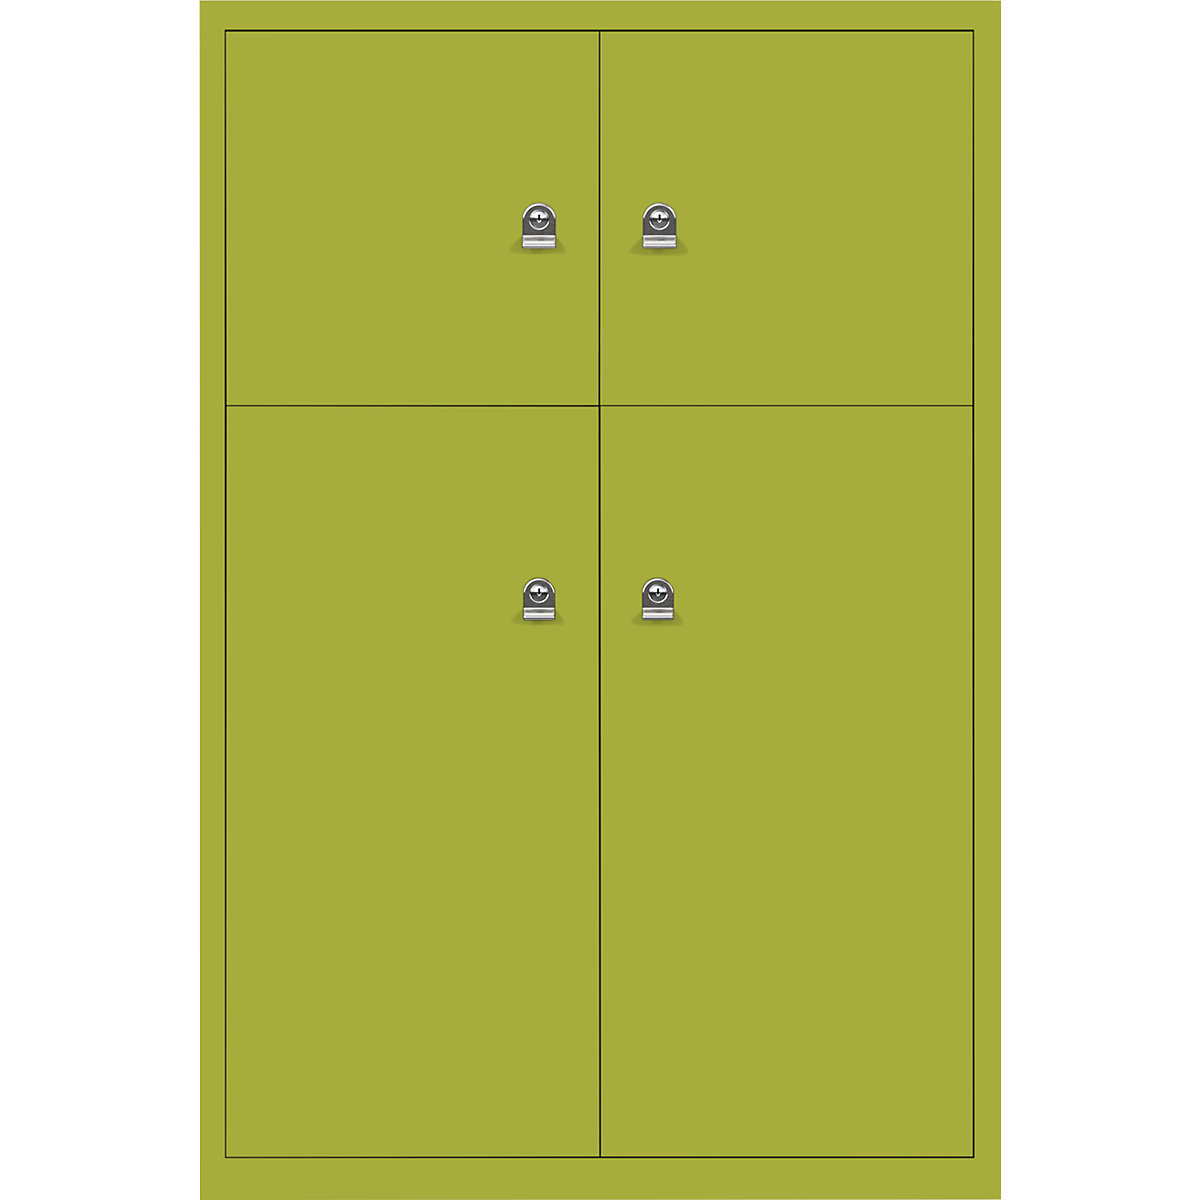 Omara s predelki z zaklepanjem LateralFile™ – BISLEY, 4 predelki z zaklepanjem, višina 2 x 375 mm, 2 x 755 mm, zelene barve-10